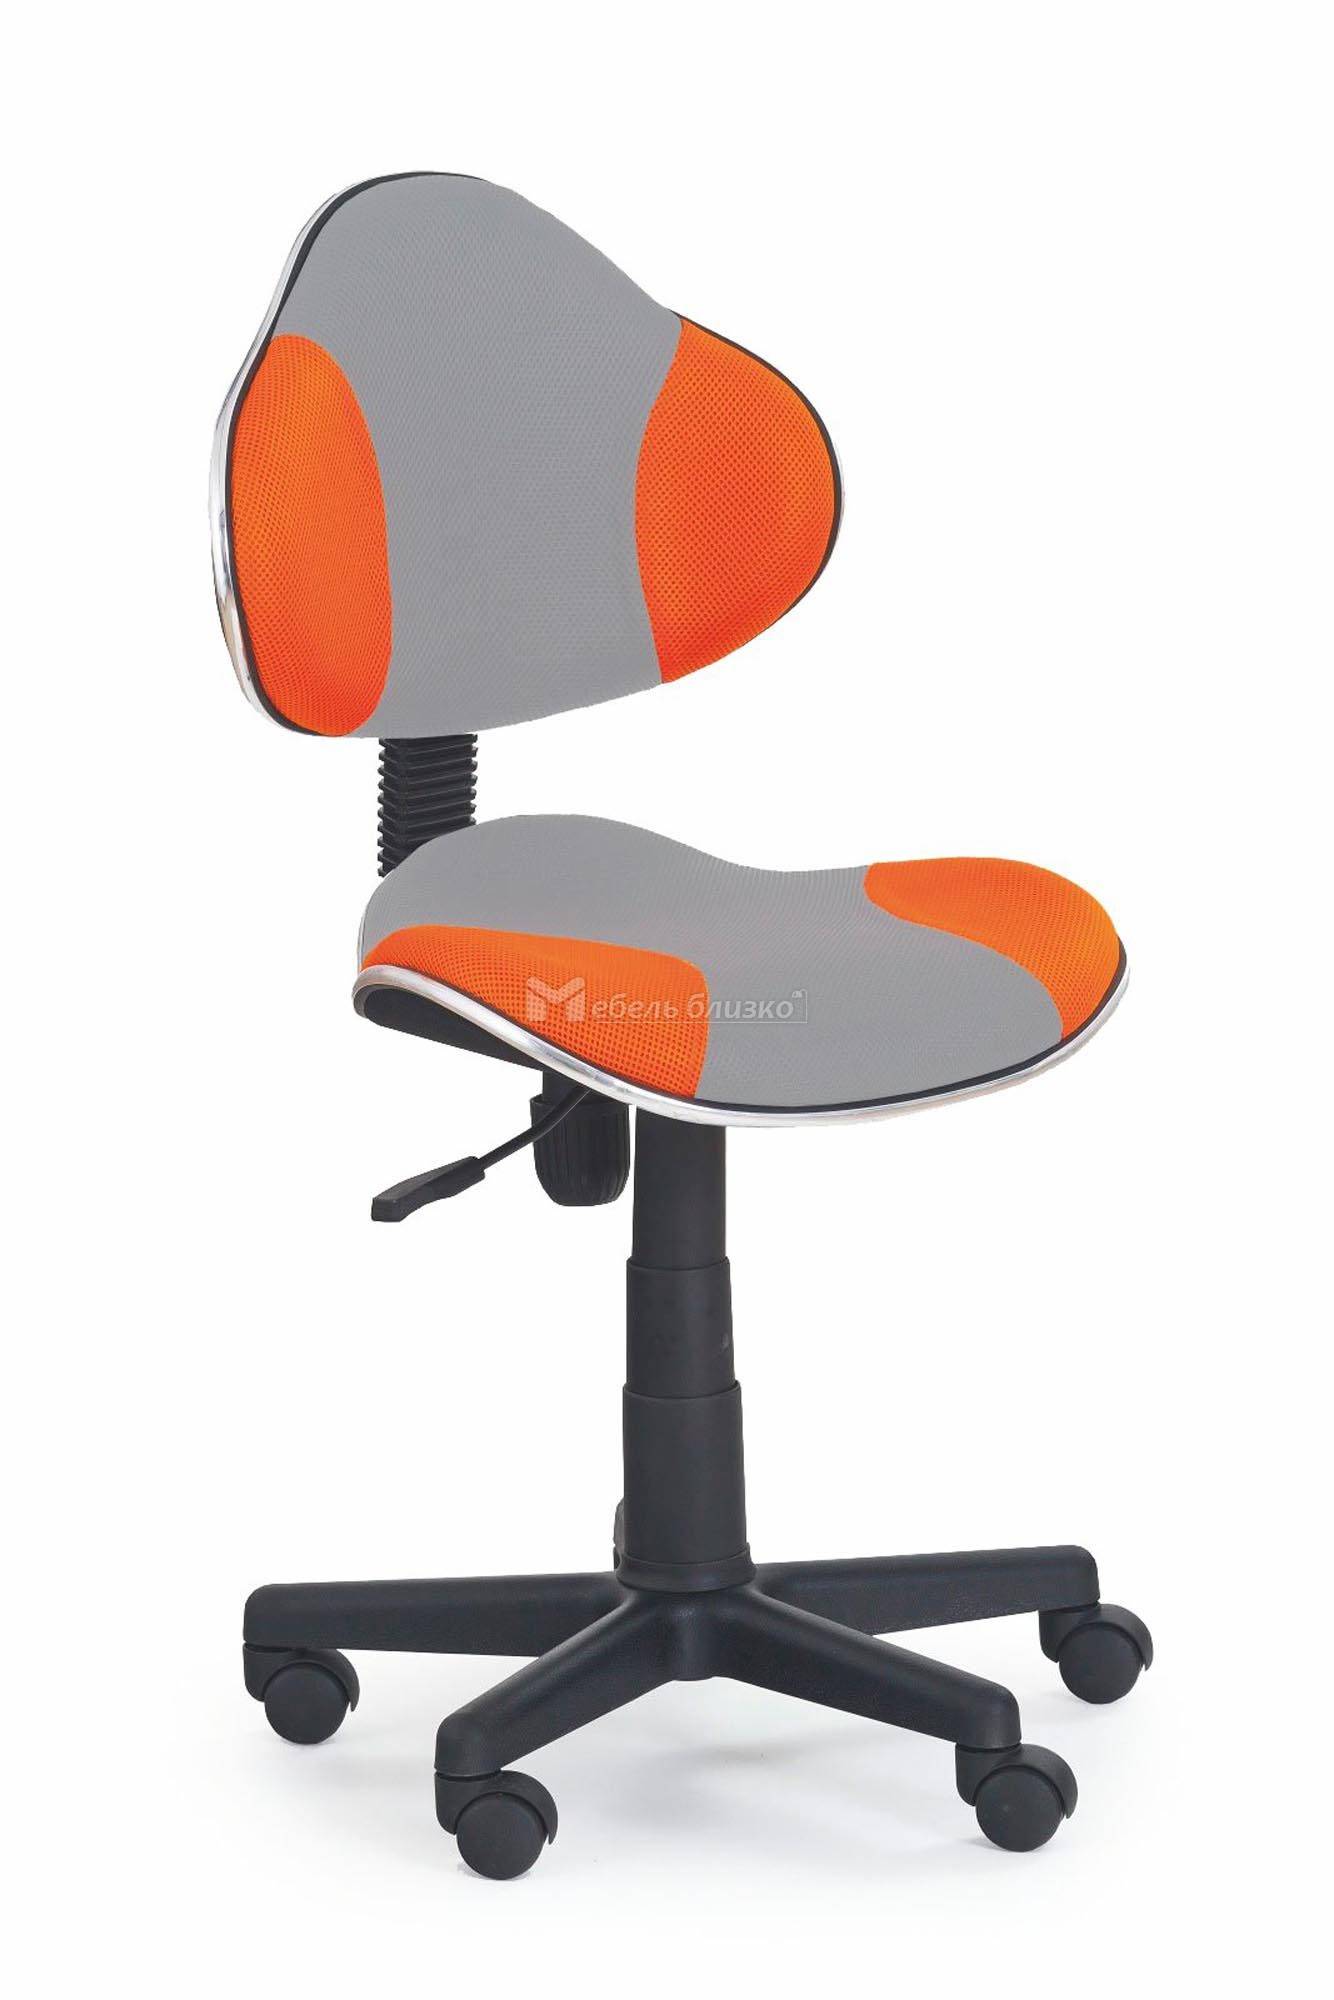 Кресло flash. Кресло детское Halmar Flash 2. Стул компьютерный оранжевый. Детский компьютерный стул оранжевый. Кресло компьютерное оранжевое.